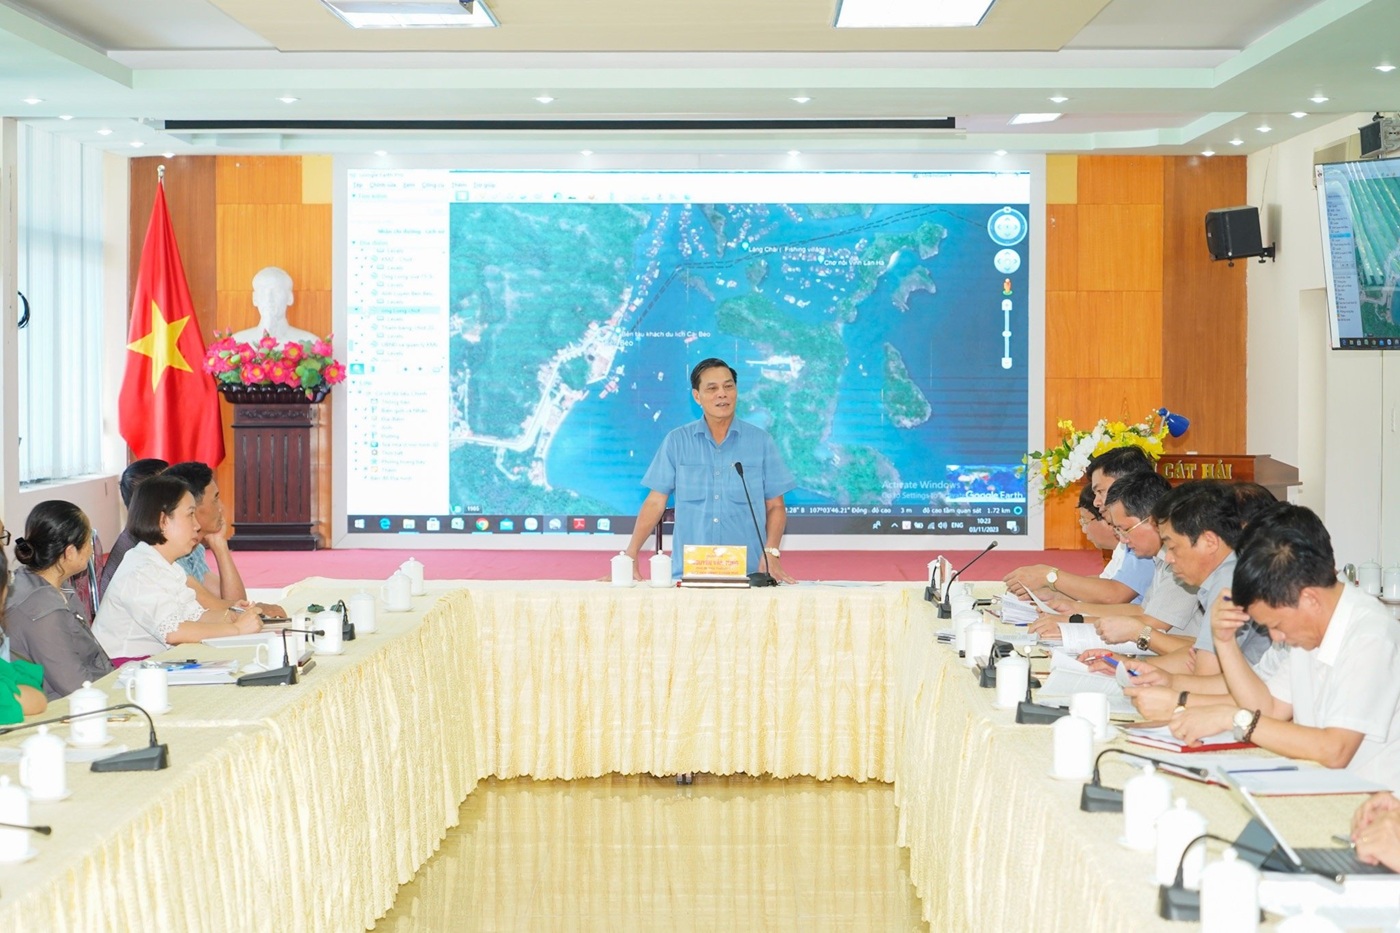 Ông Nguyễn Văn Tùng, Chủ tịch UBND TP. Hải Phòng kết luận tại cuộc làm việc. Ảnh: Thanh Sơn